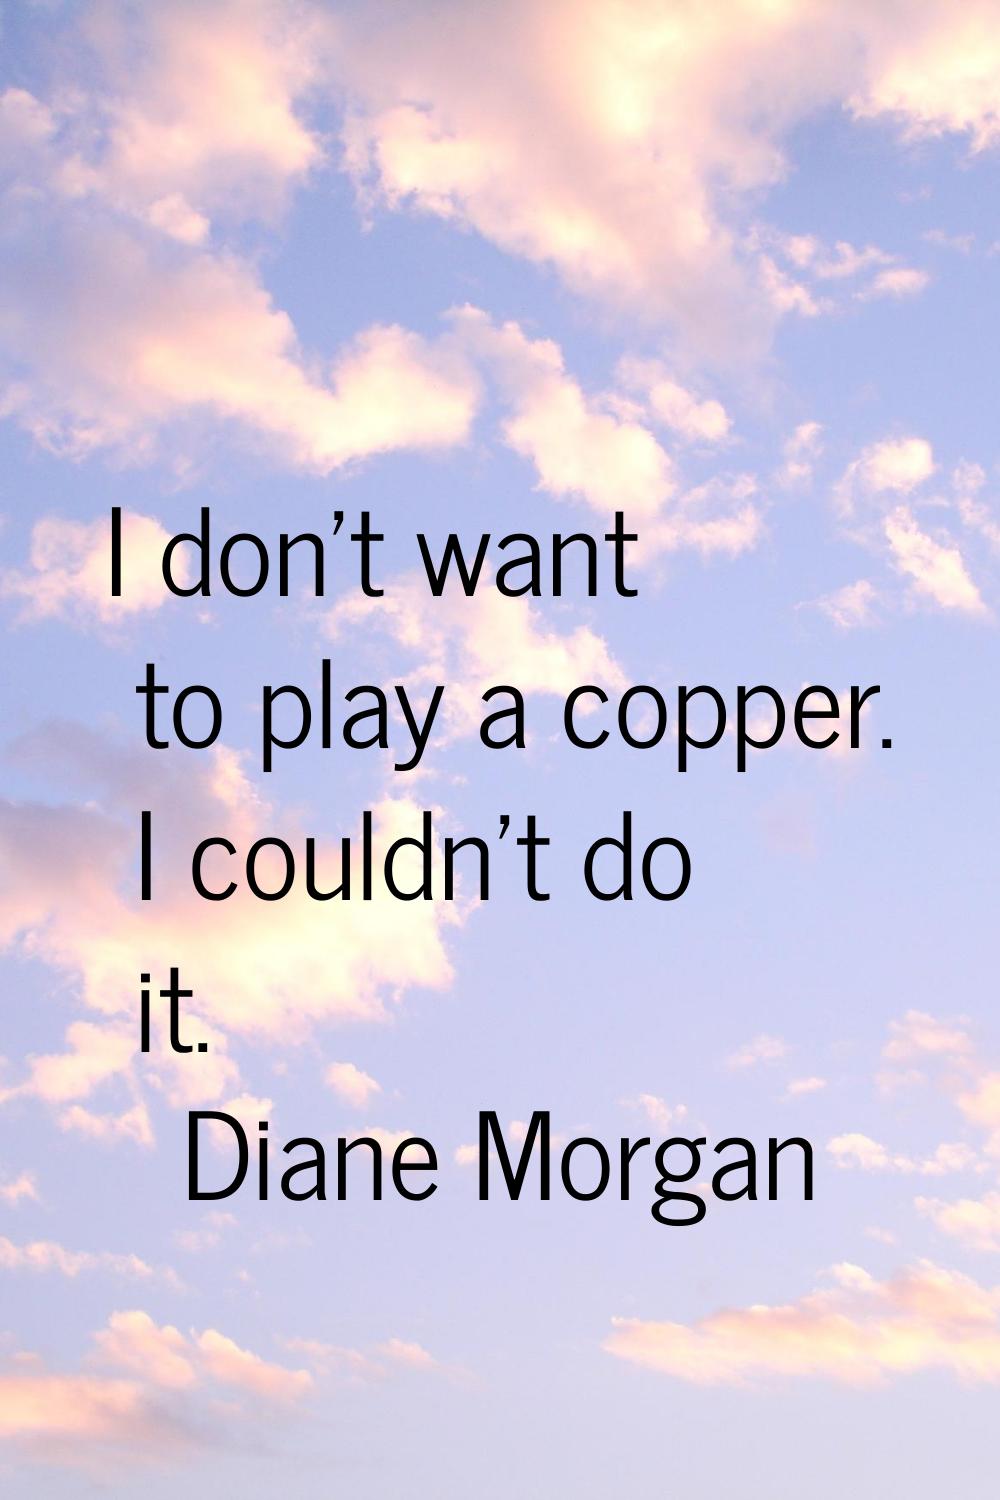 I don't want to play a copper. I couldn't do it.